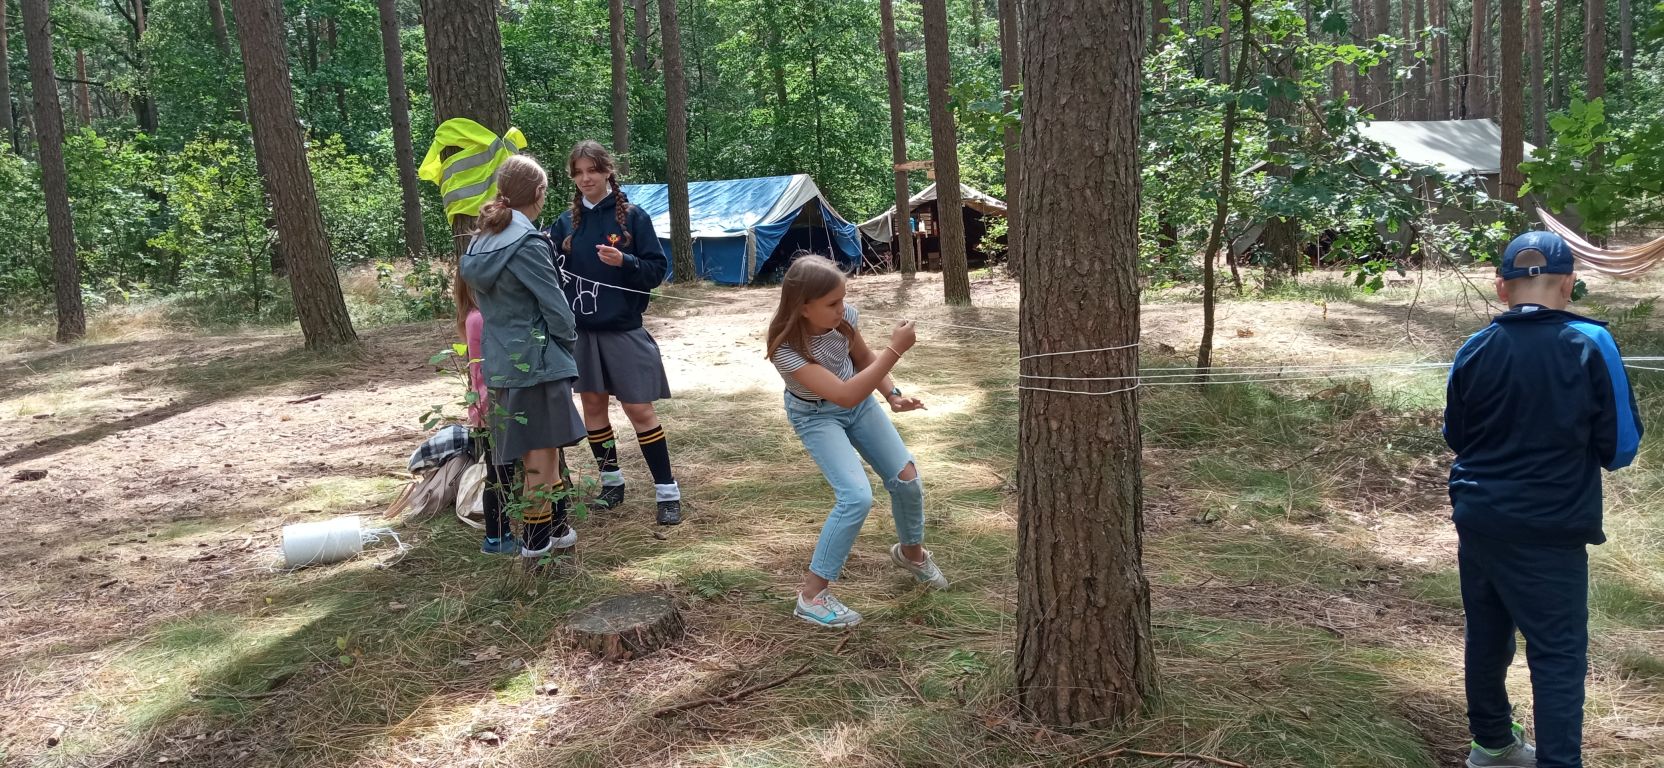 Fotografia przedstawia dzieci bawiących się z harcerzami w lesie